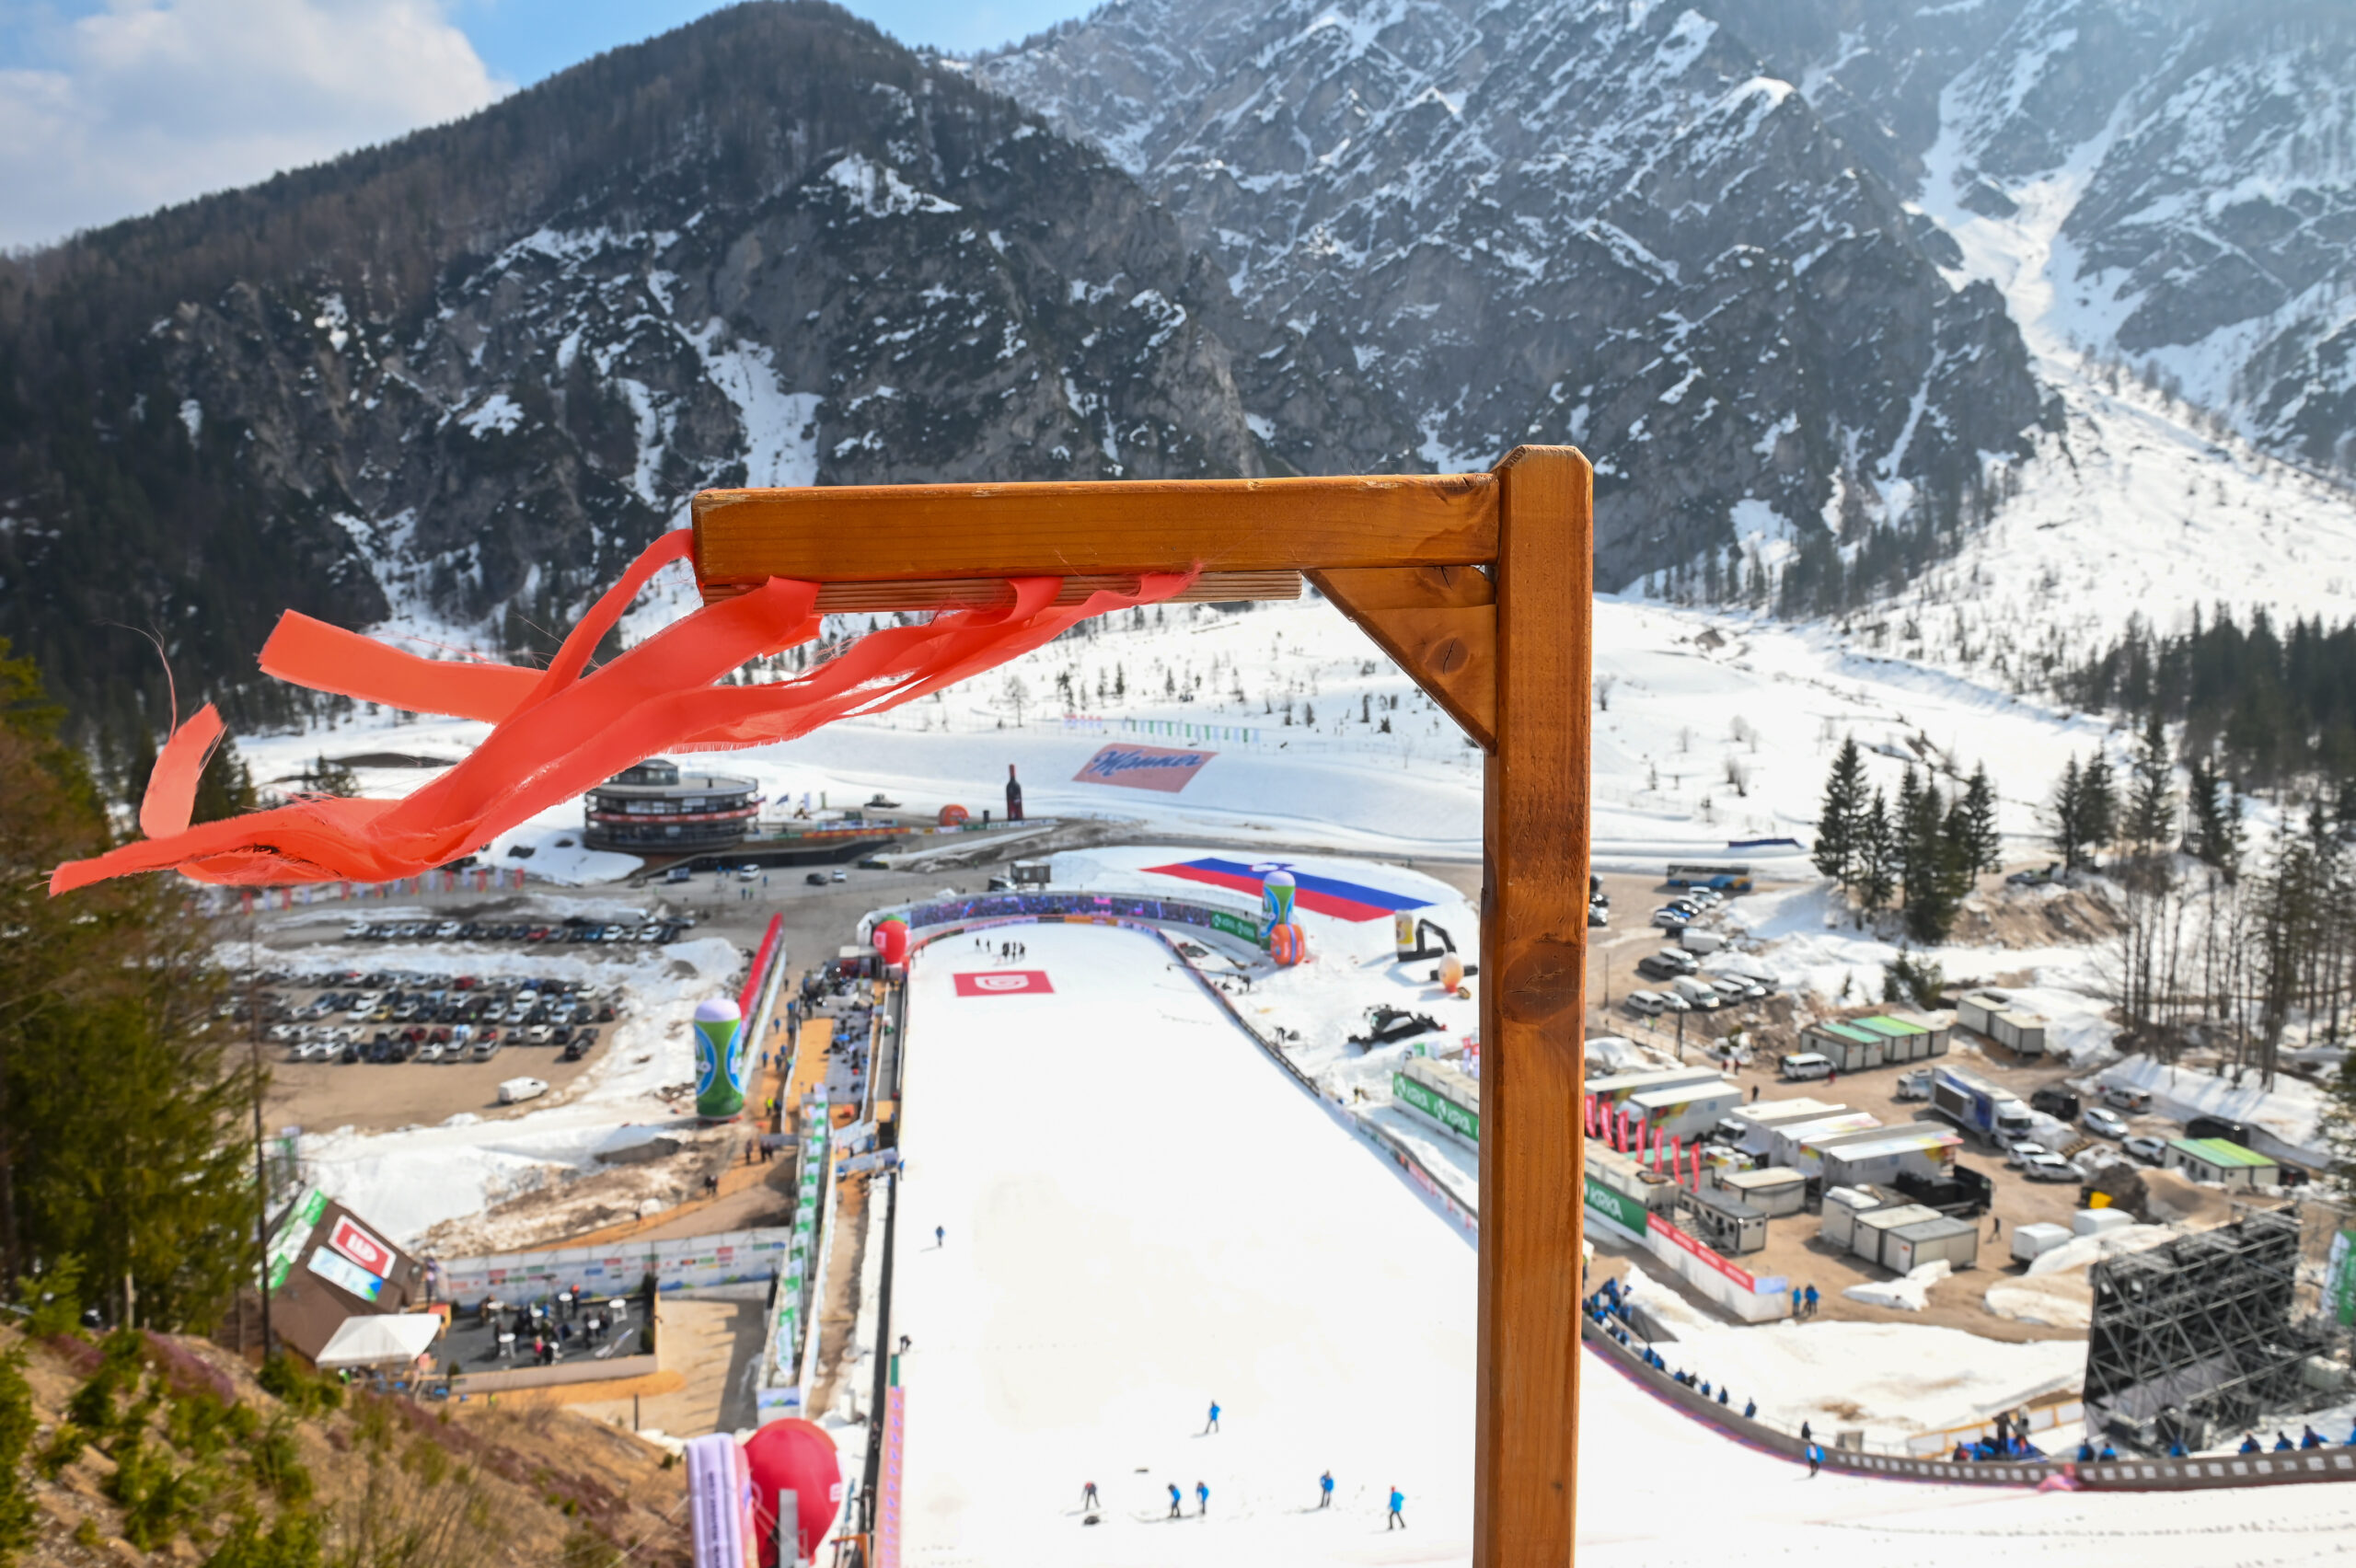 Skifliegen Planica: Teamwettbewerb fällt dem Wind zum Opfer